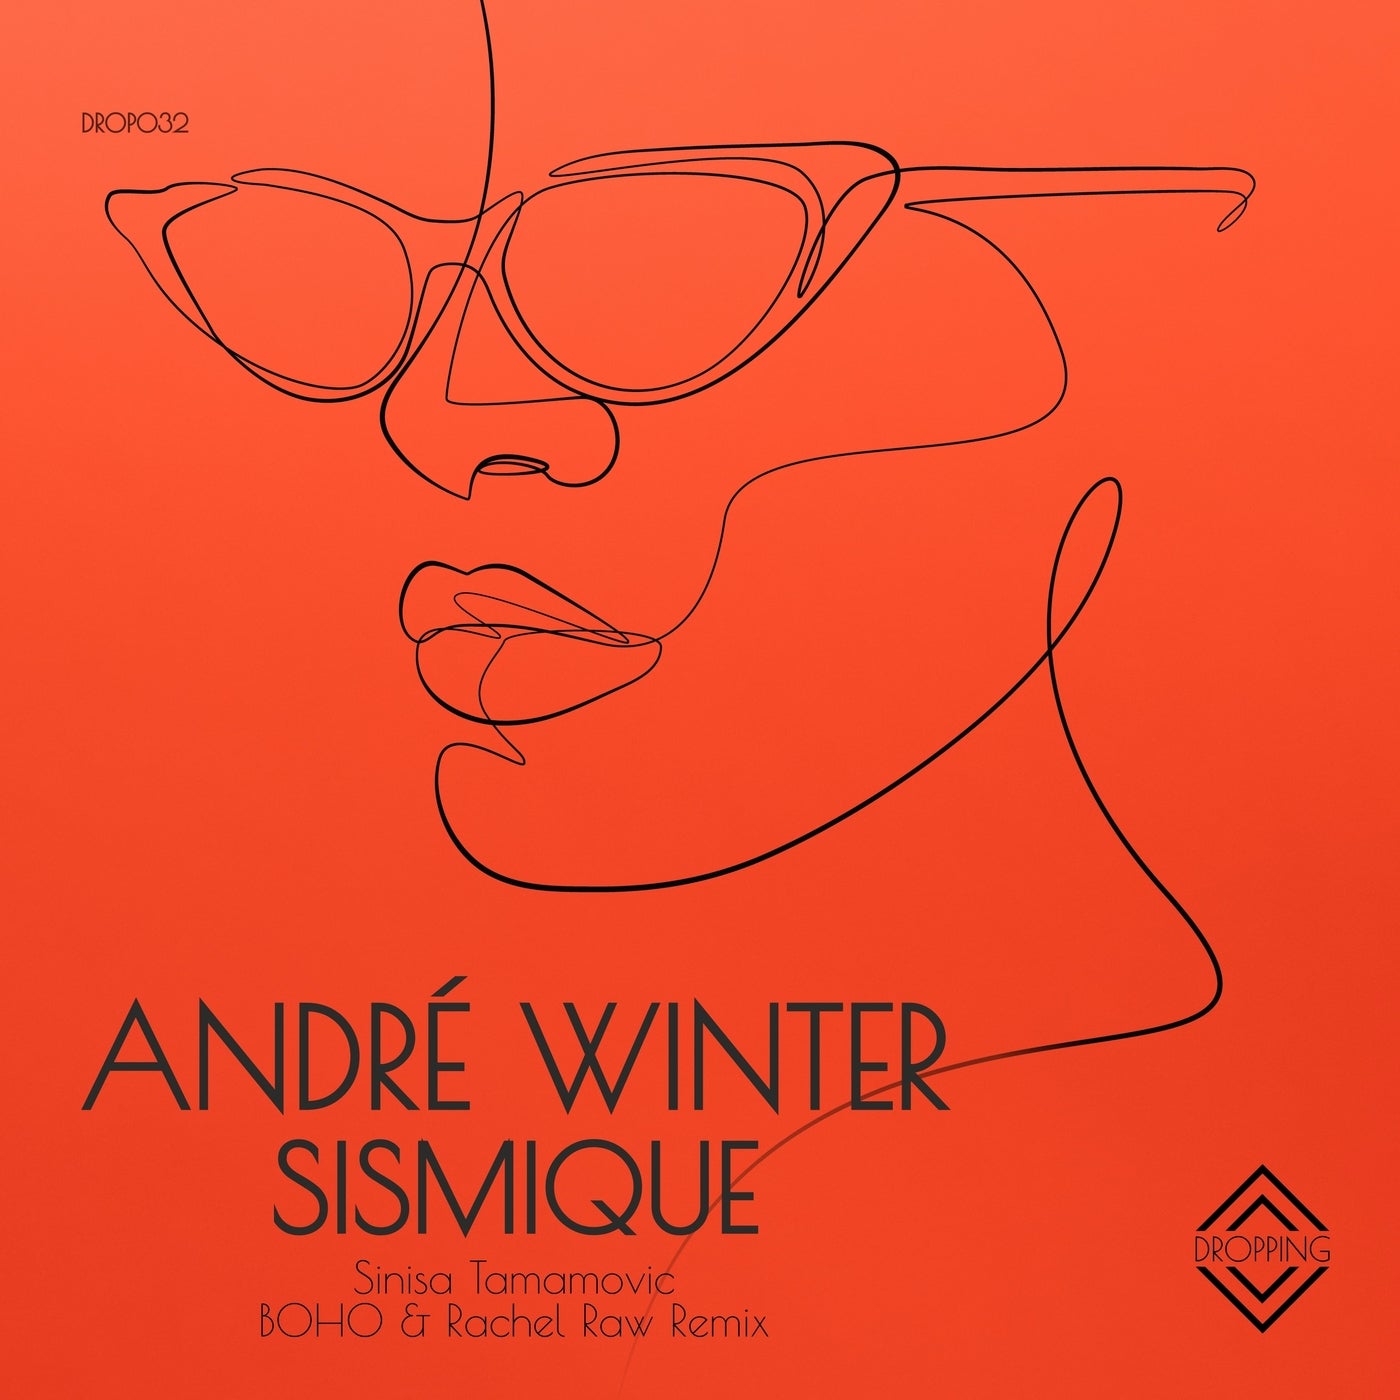 Andre Winter – Sismique [DROP032]